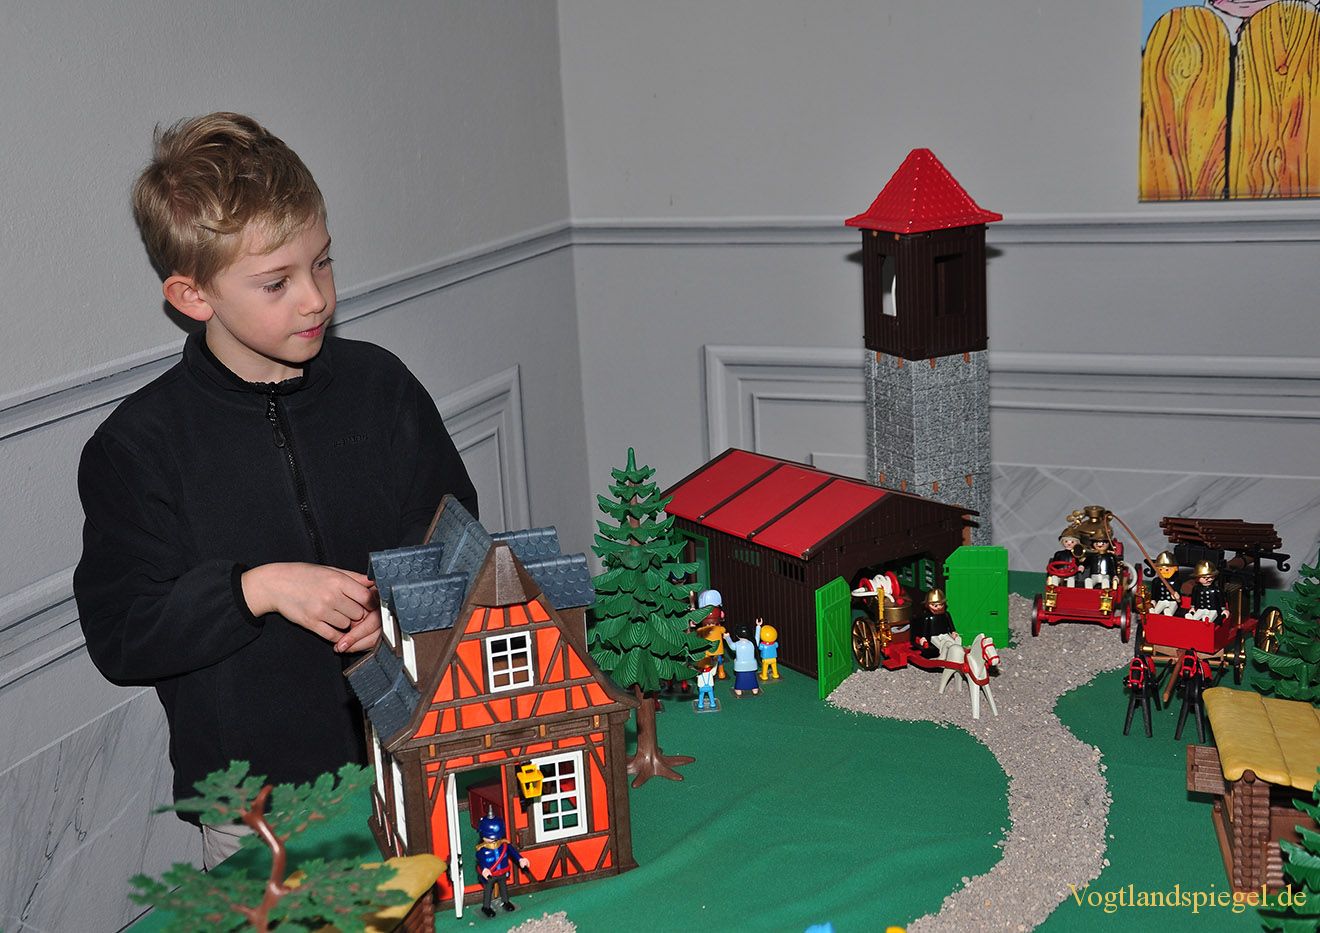 Playmobil-Ausstellung in beiden Greizer Schlössern zu sehen